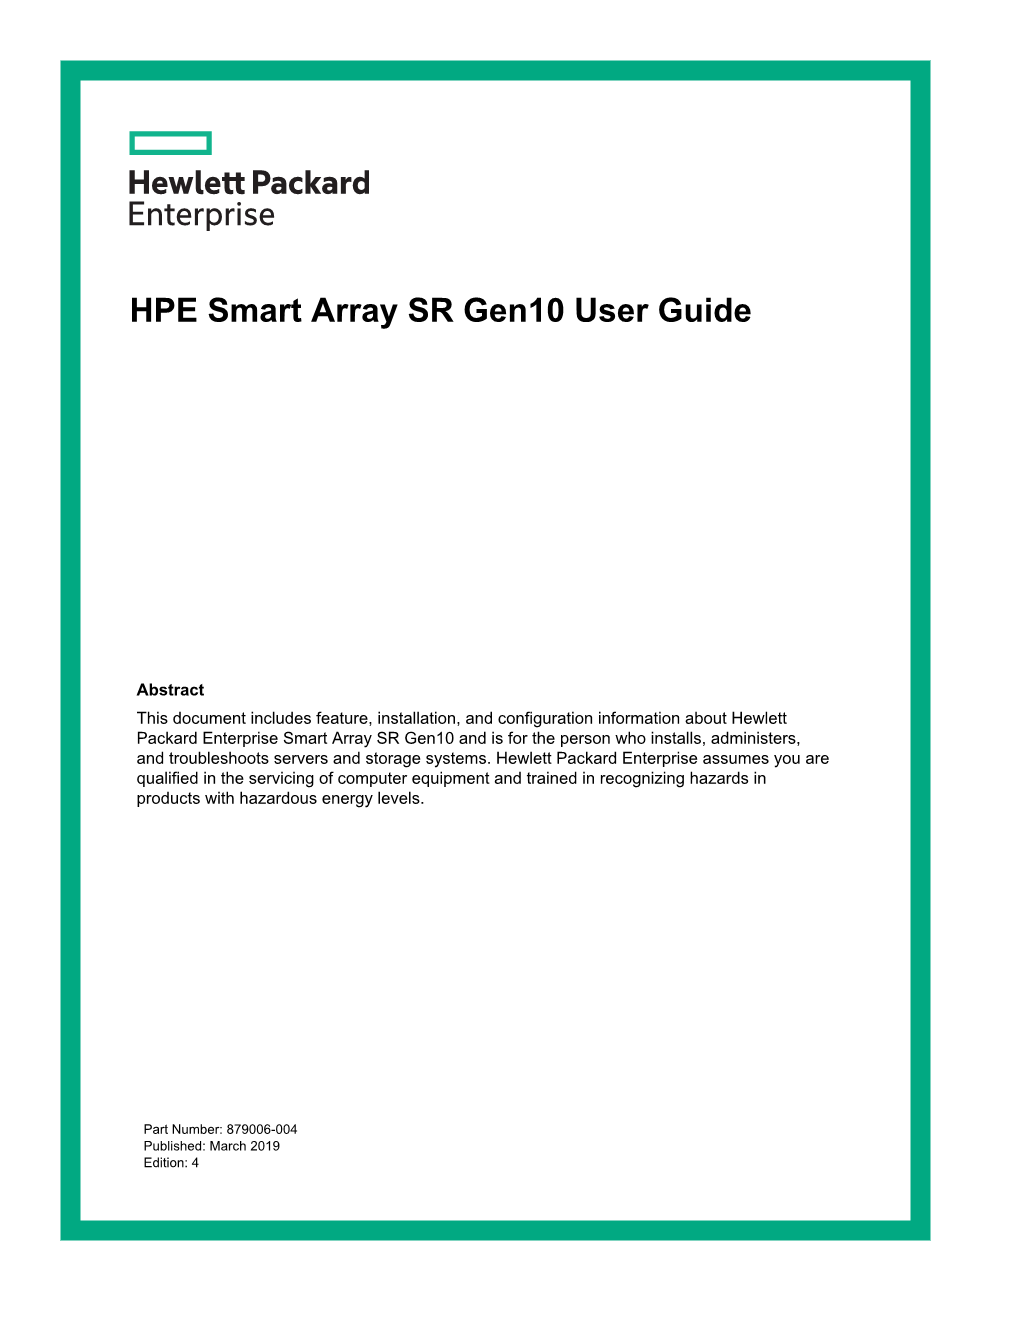 HPE Smart Array SR Gen10 User Guide